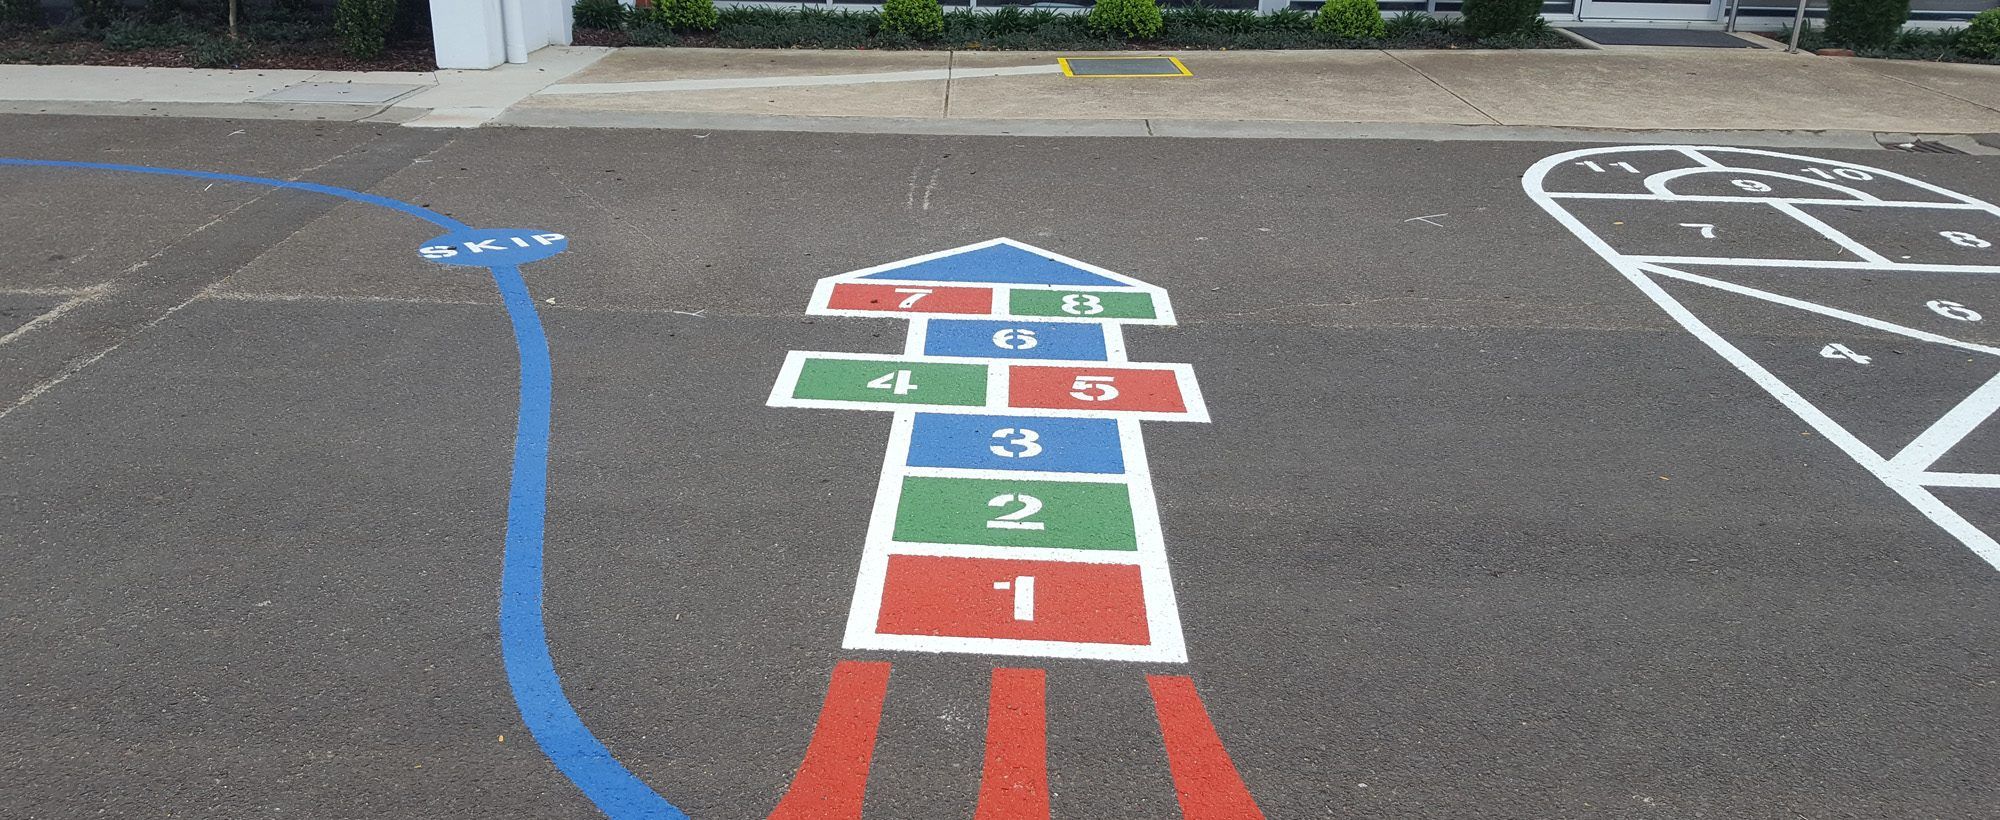 School-Playground-Number-Line-Marking